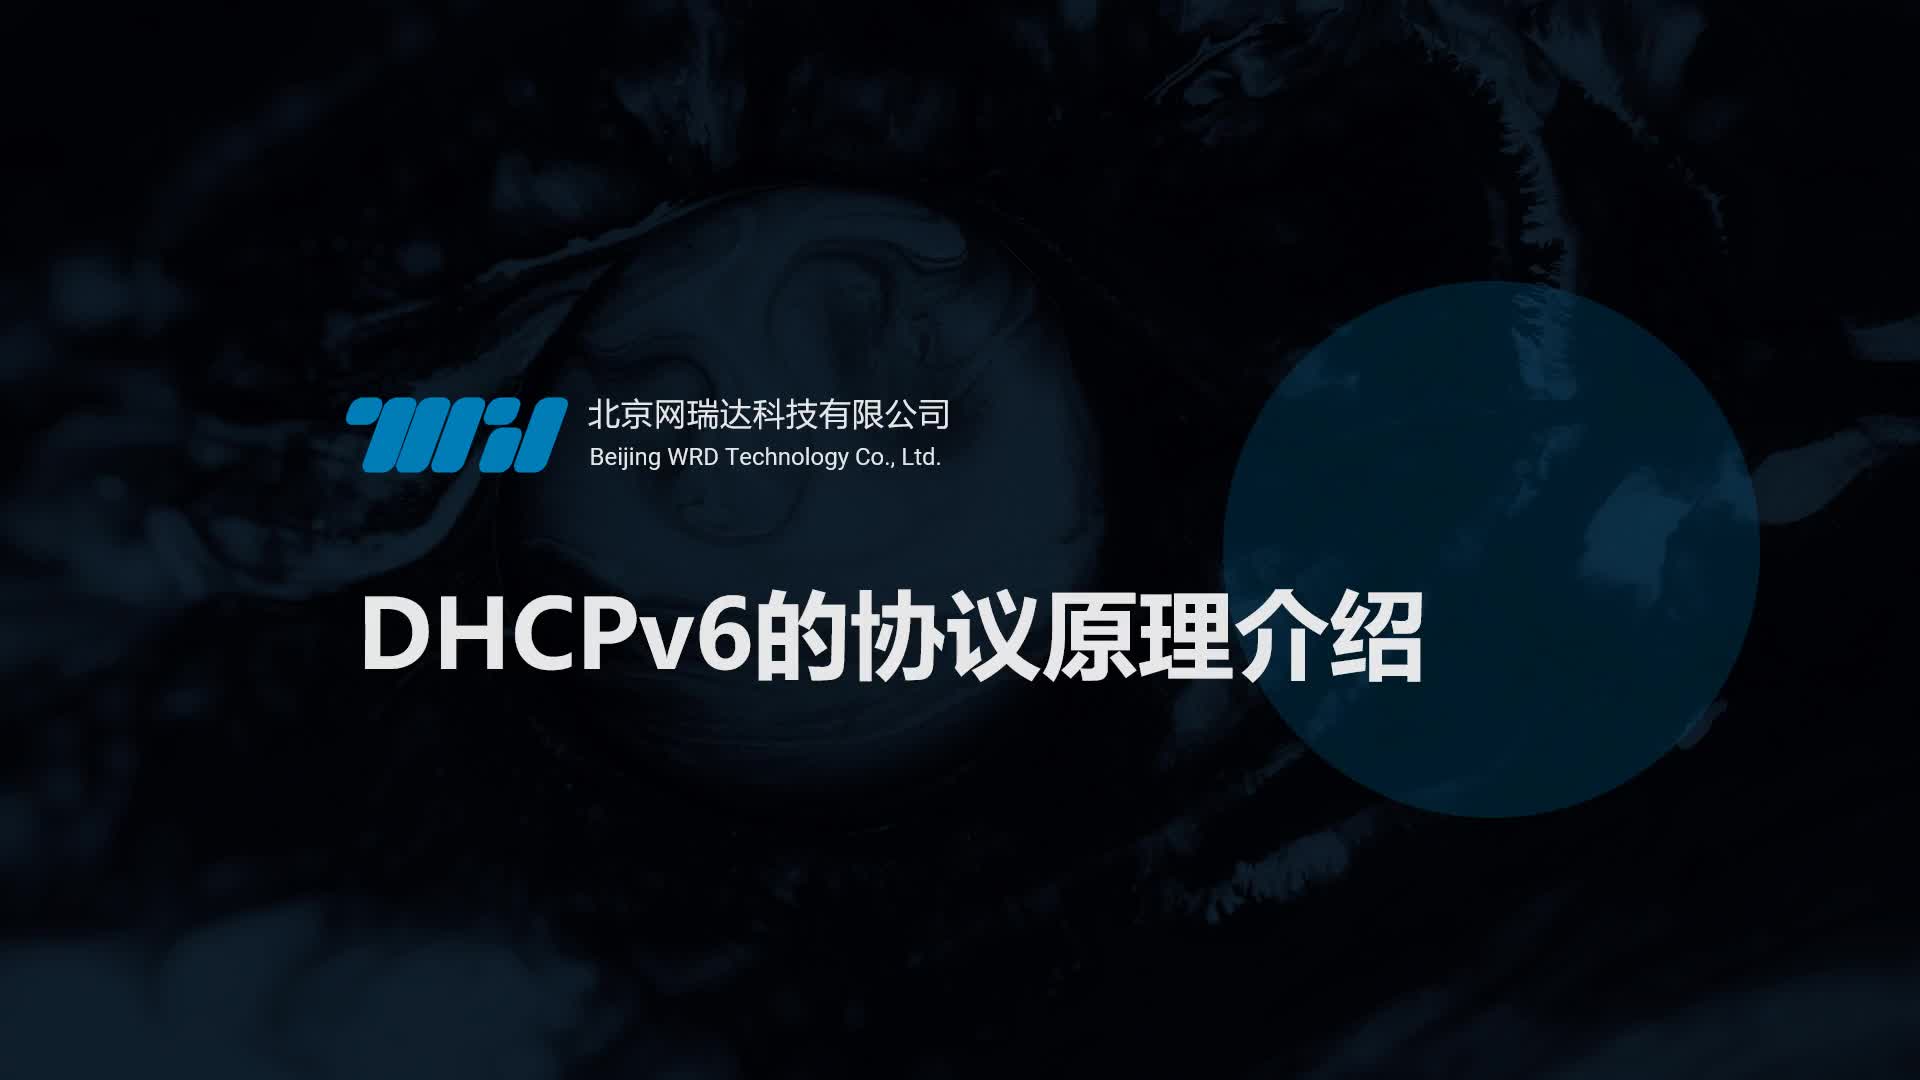 162-DHCP-DHCPv6的协议原理介绍